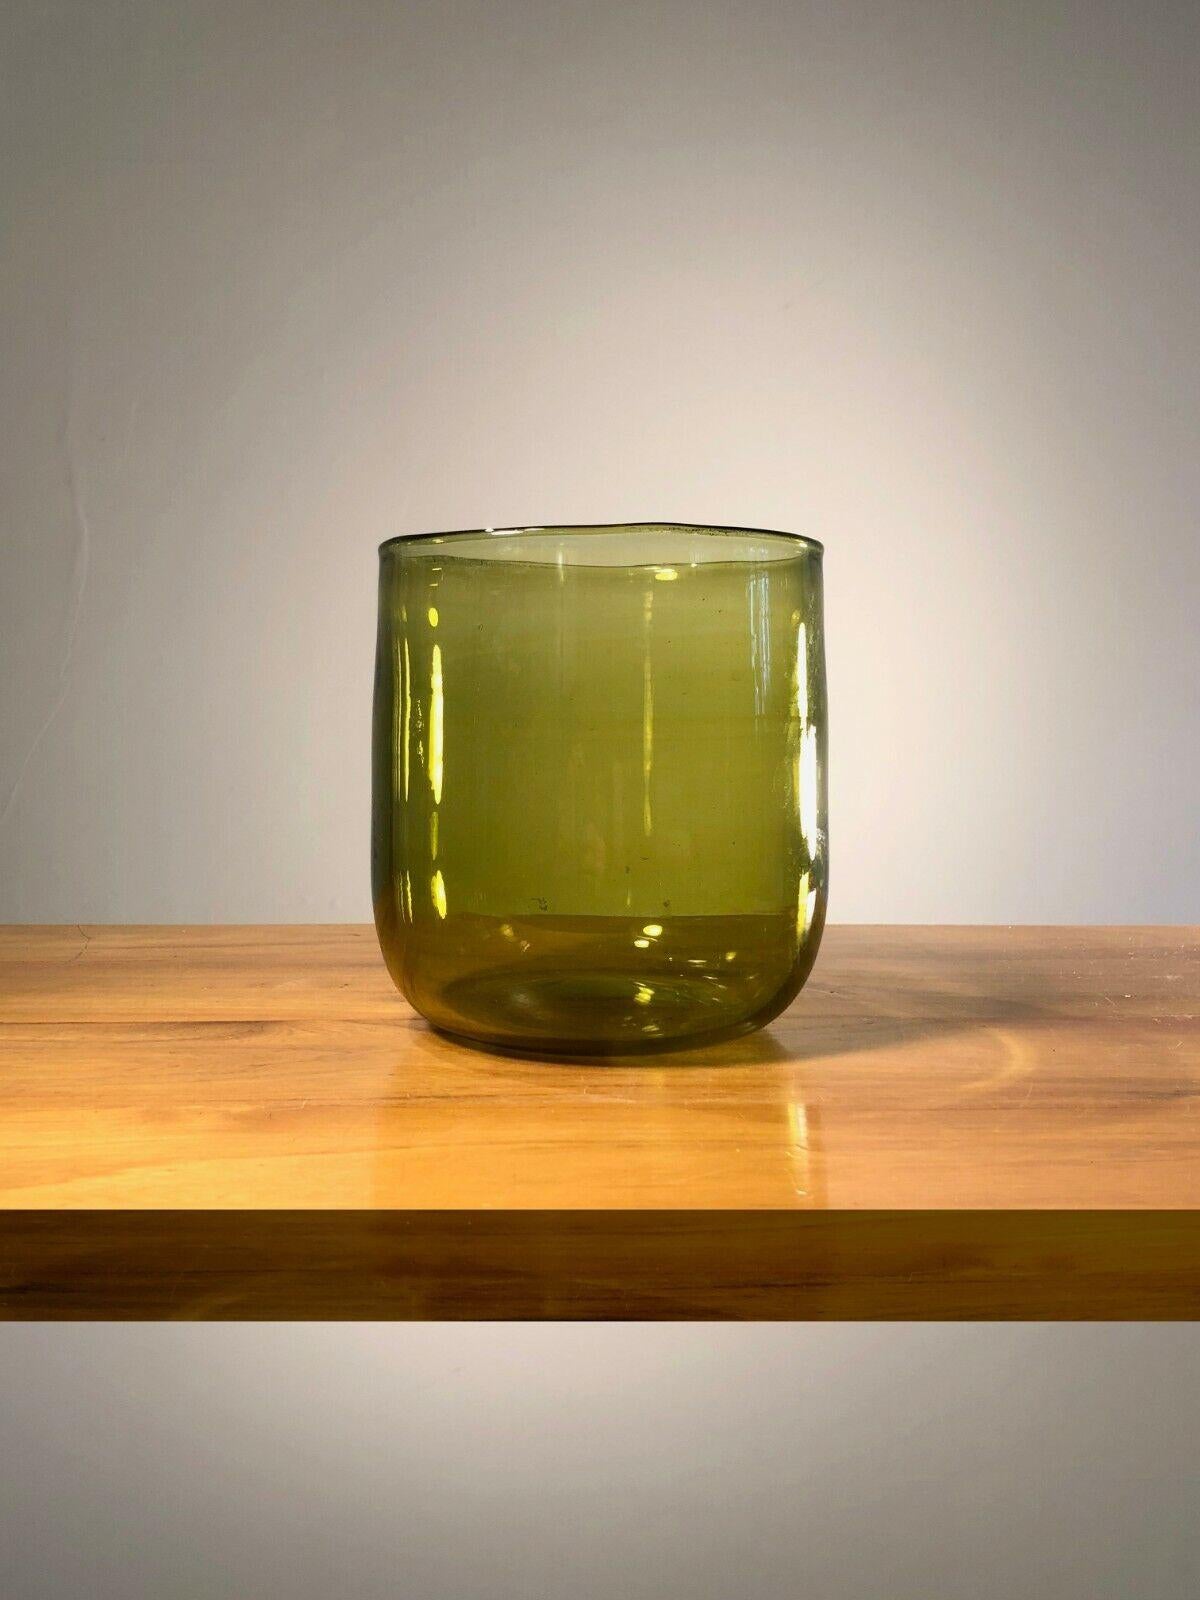 Exceptionnel grand vase ou pot, Moderniste, Free-Form, dans un beau verre soufflé kaki jaunâtre, par Claude Morin, signé Morin / Dieulefit, sous la base... France 1970.